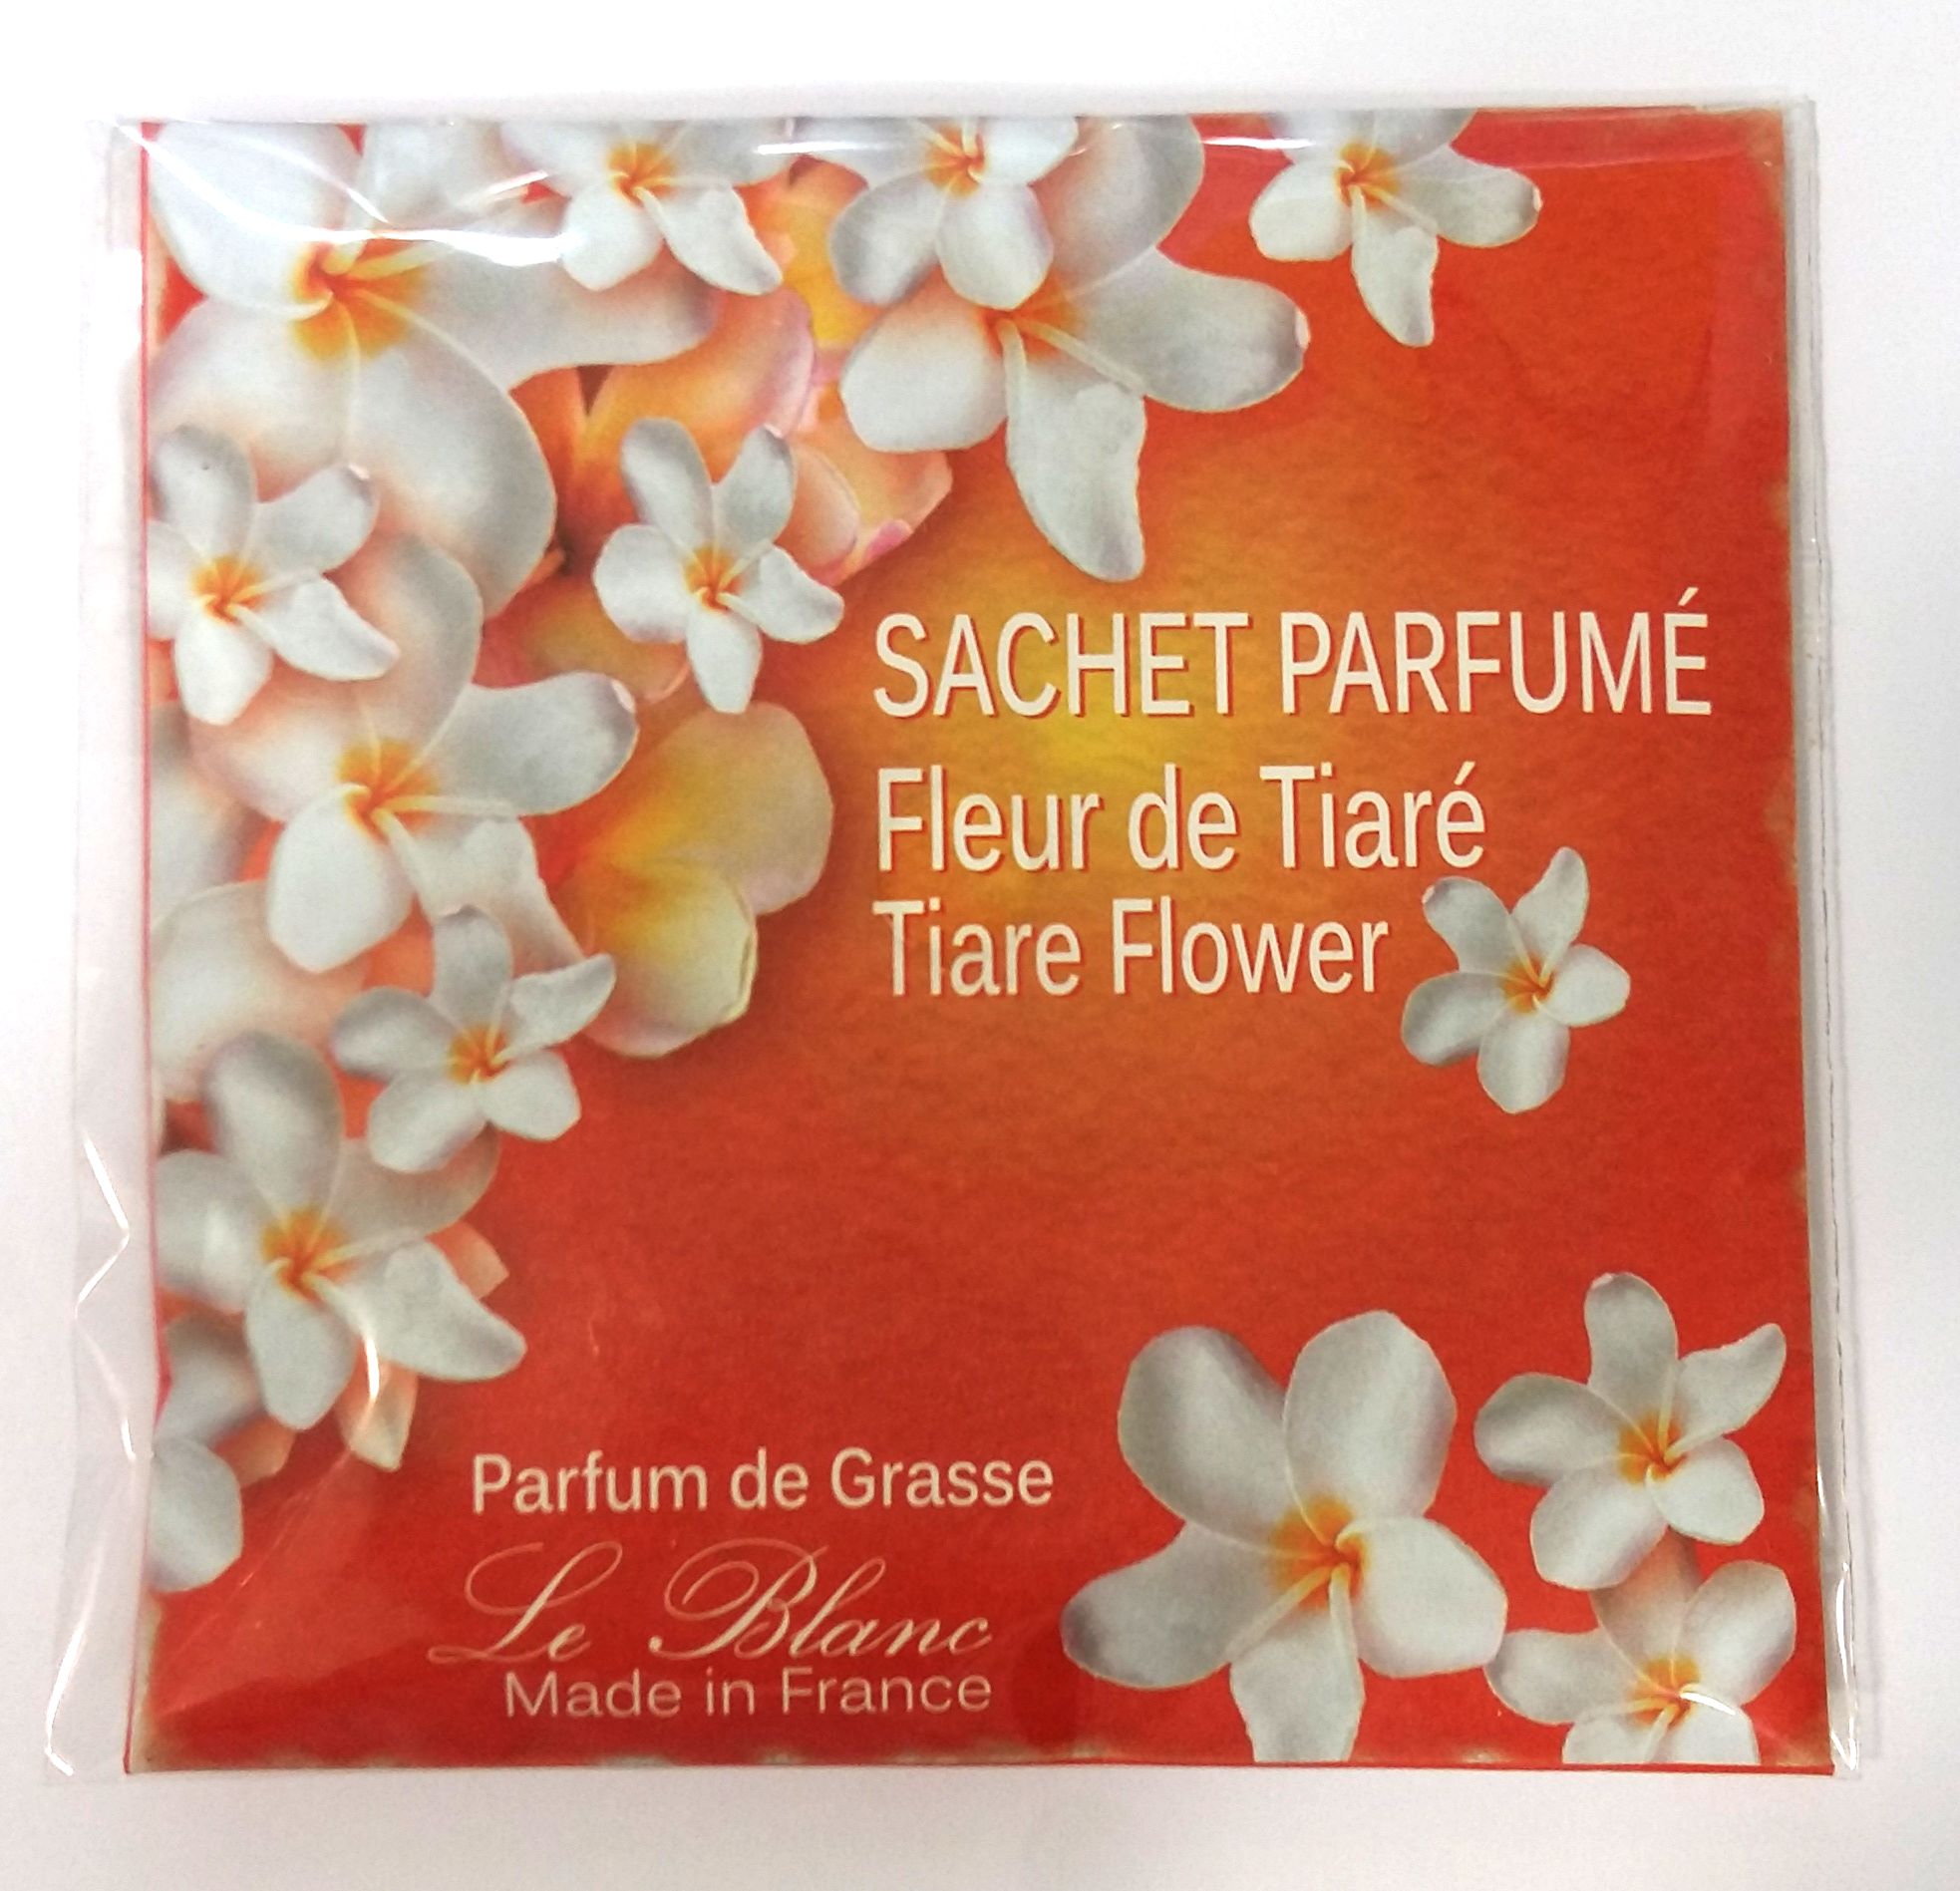 La pharmacie rolland : Sachet parfumé Fleur de Tiaré 8g